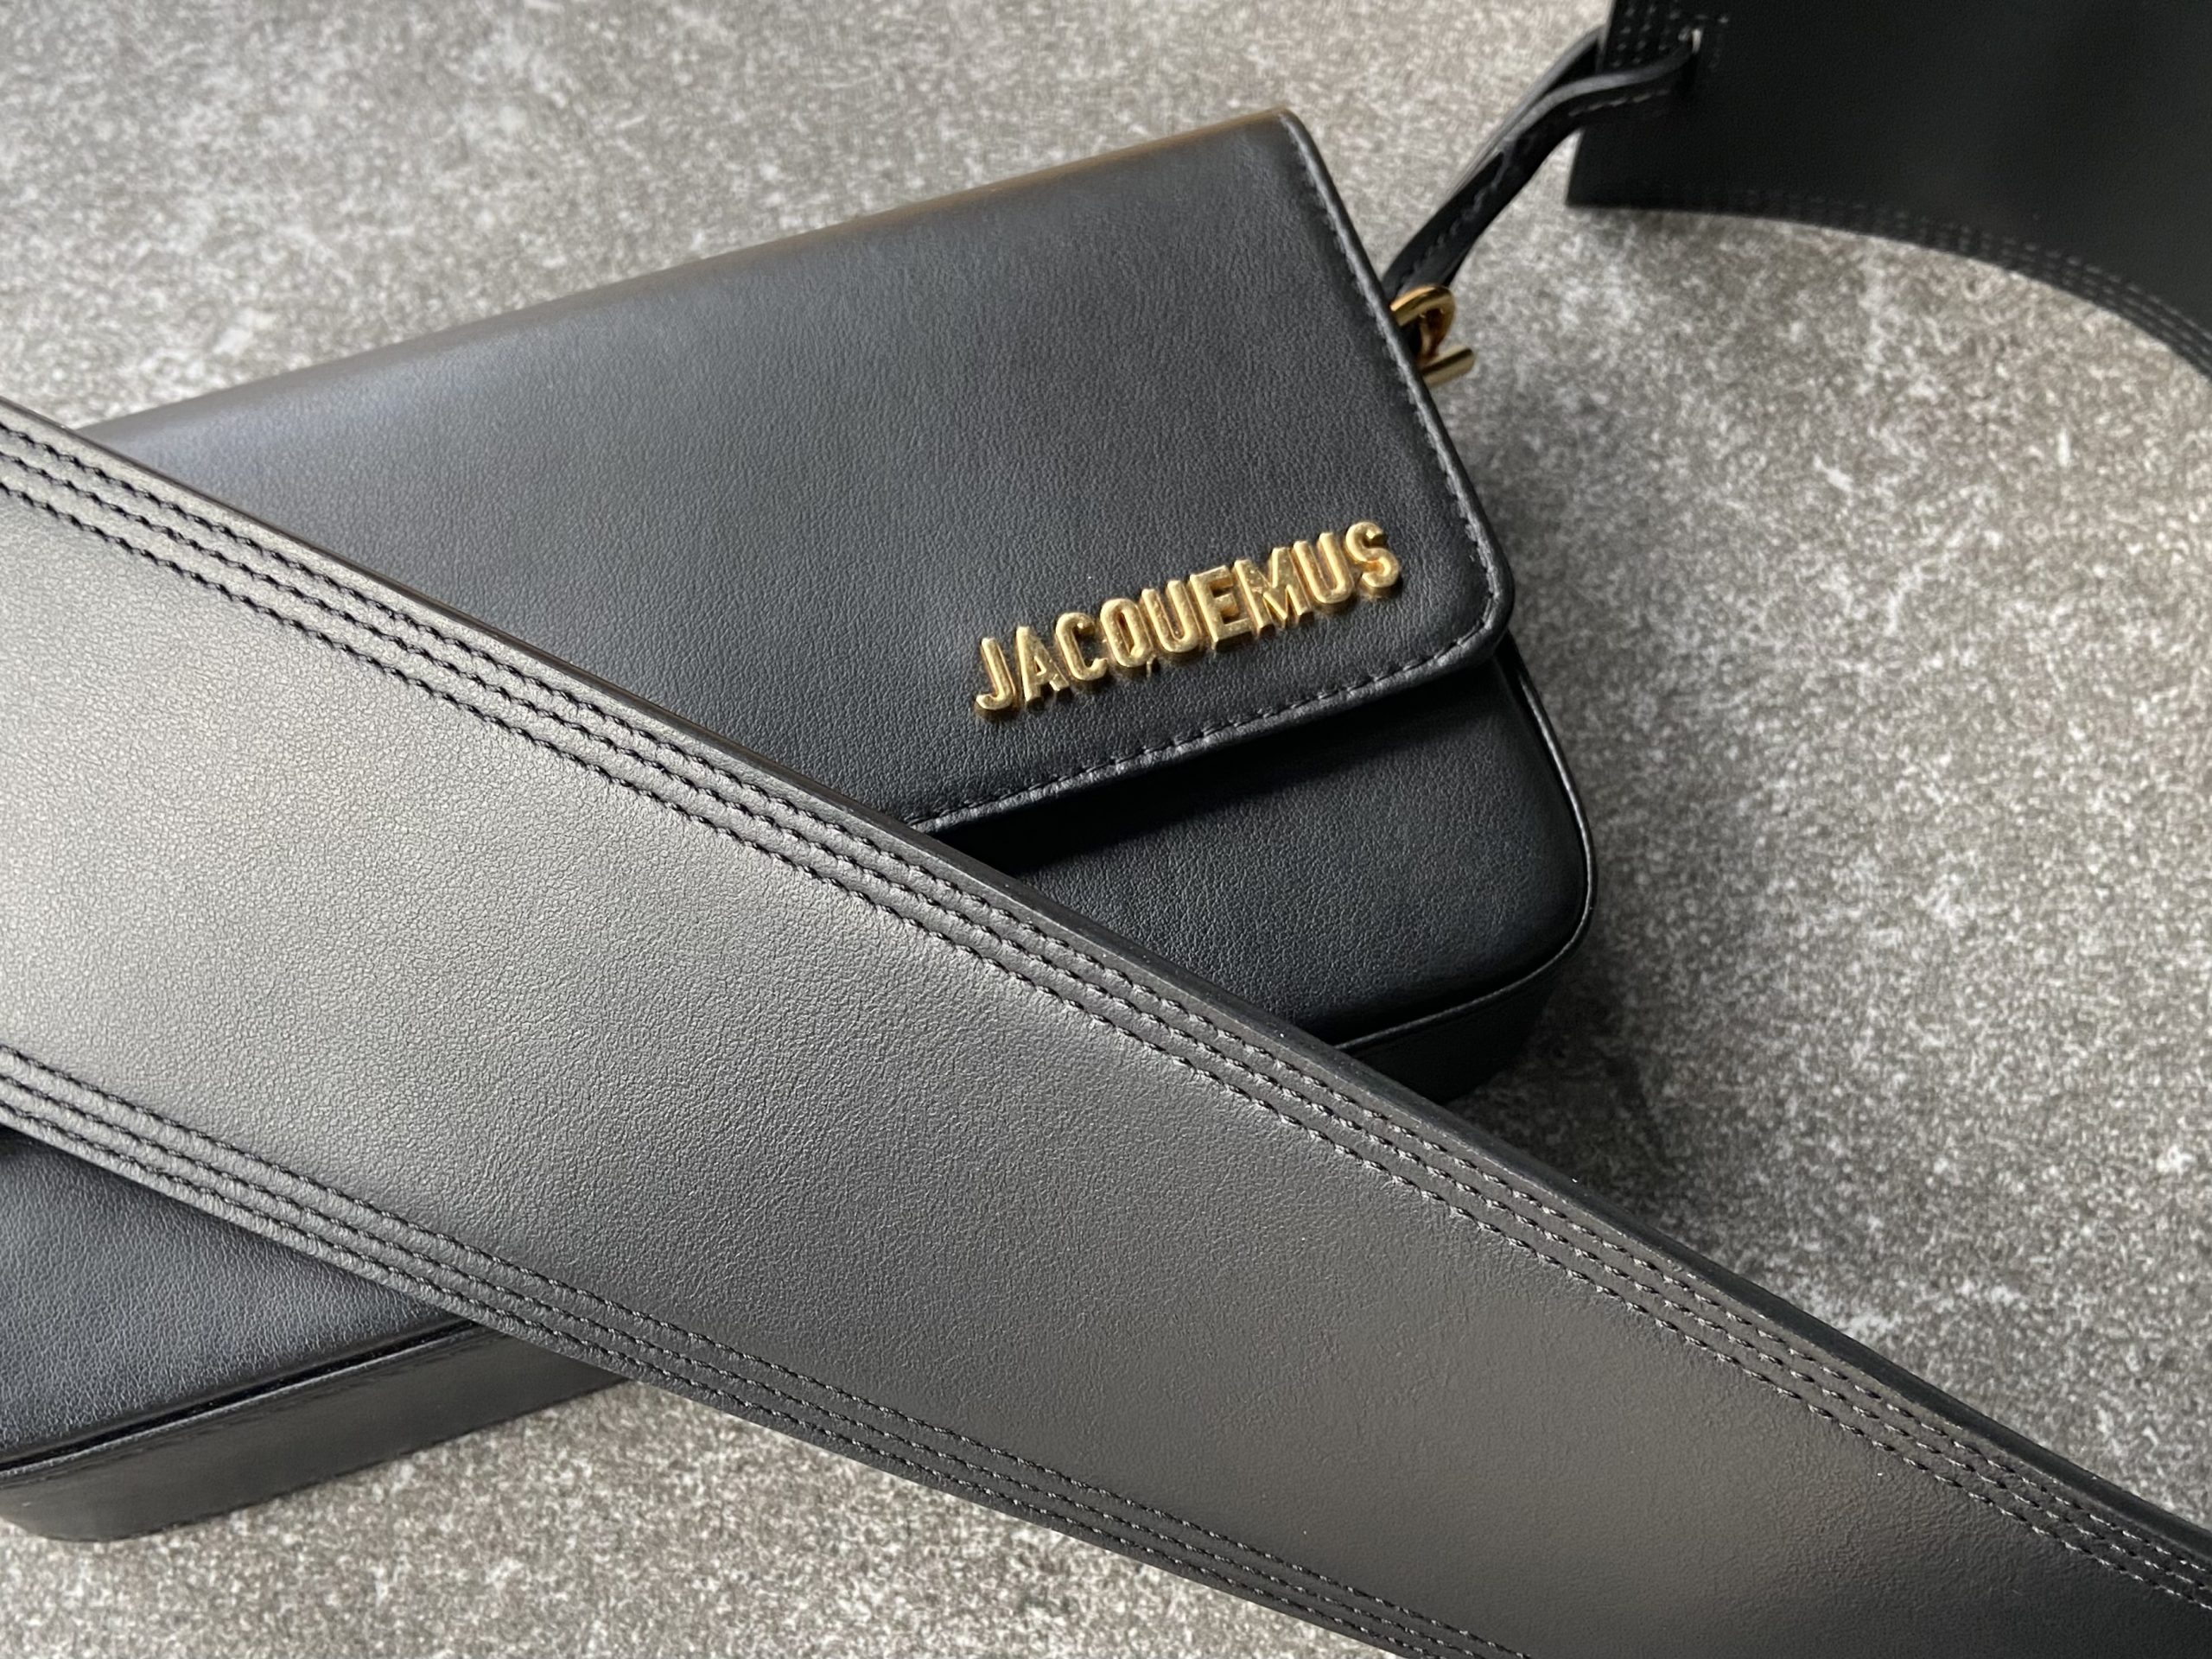 shoulder strap for the JACQUEMUS bag